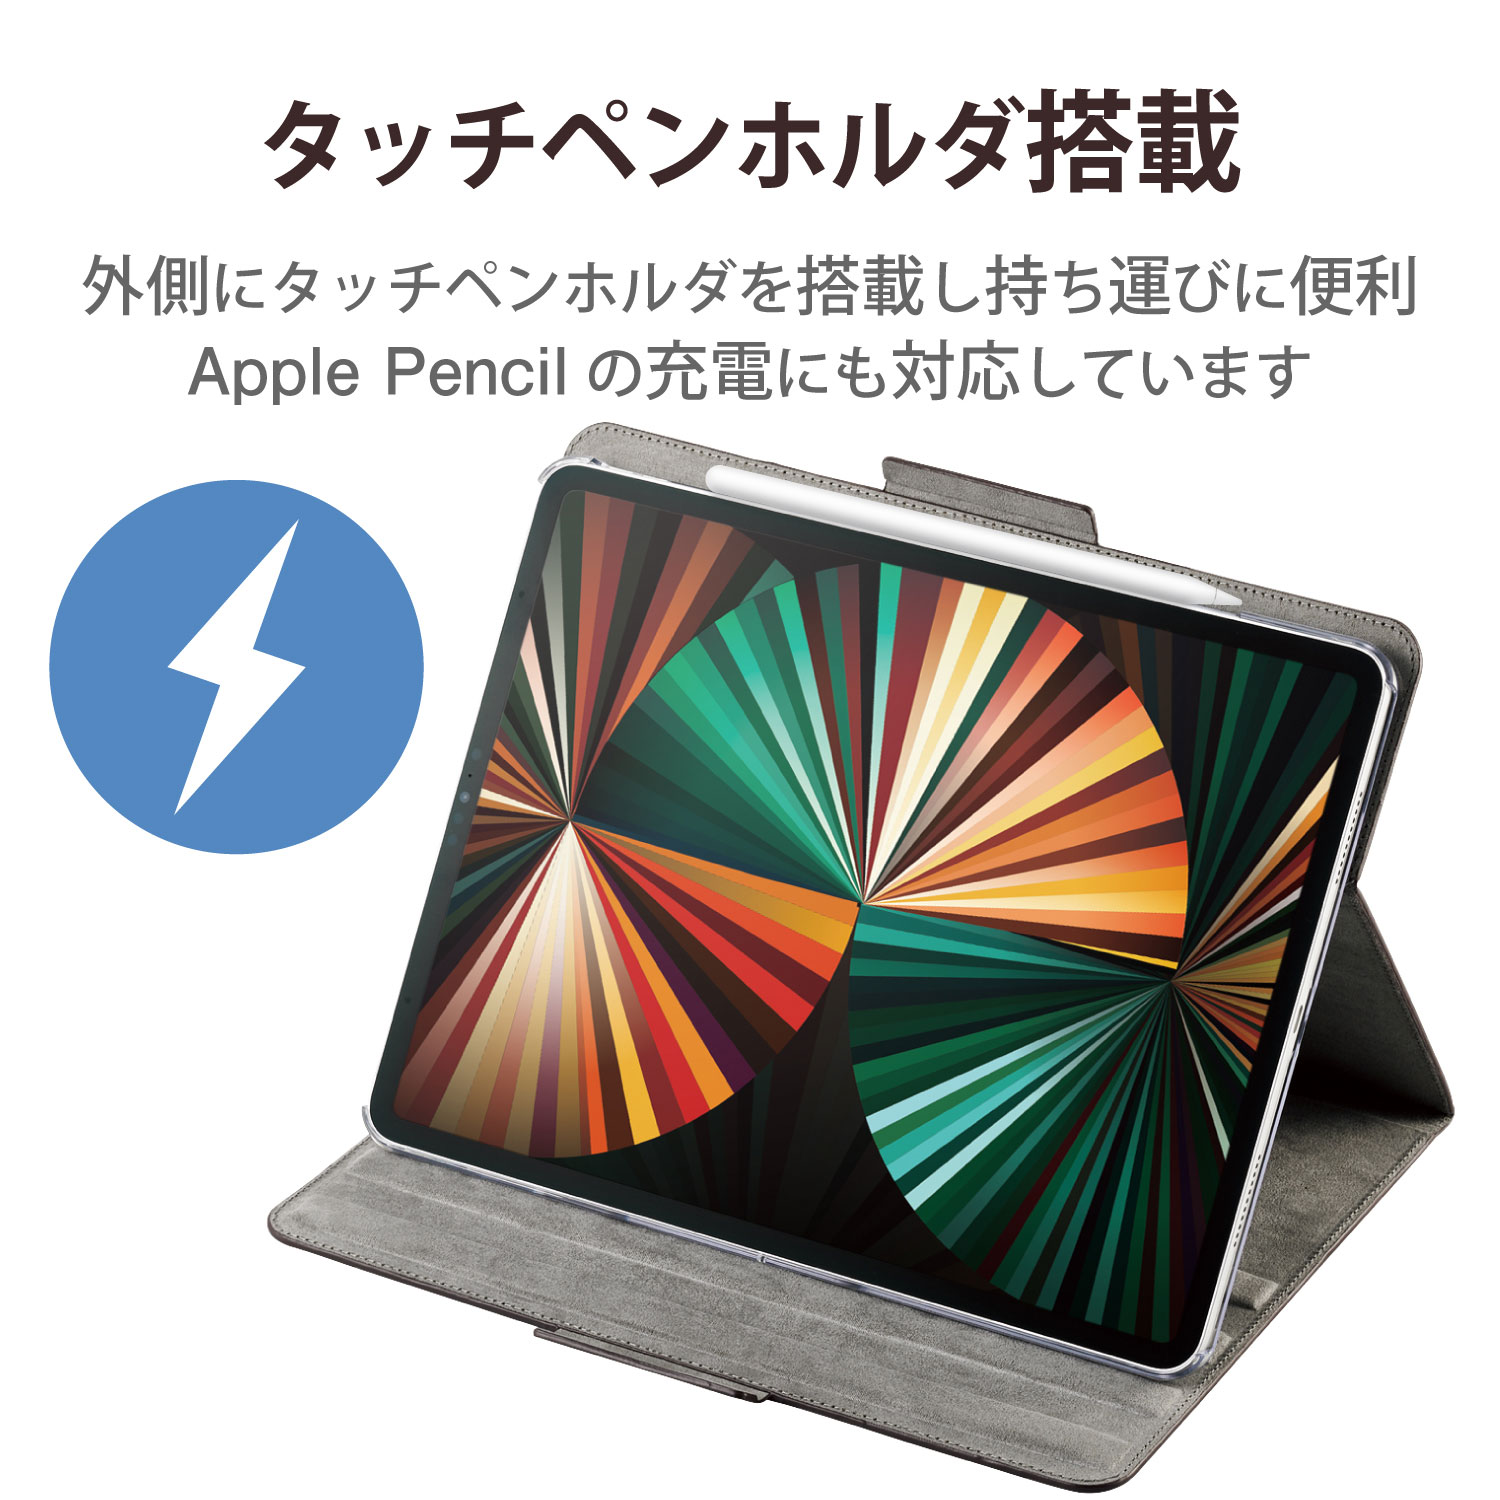 たい焼き型iPad PCタブレットポーチ ケース 収納 持ち運び